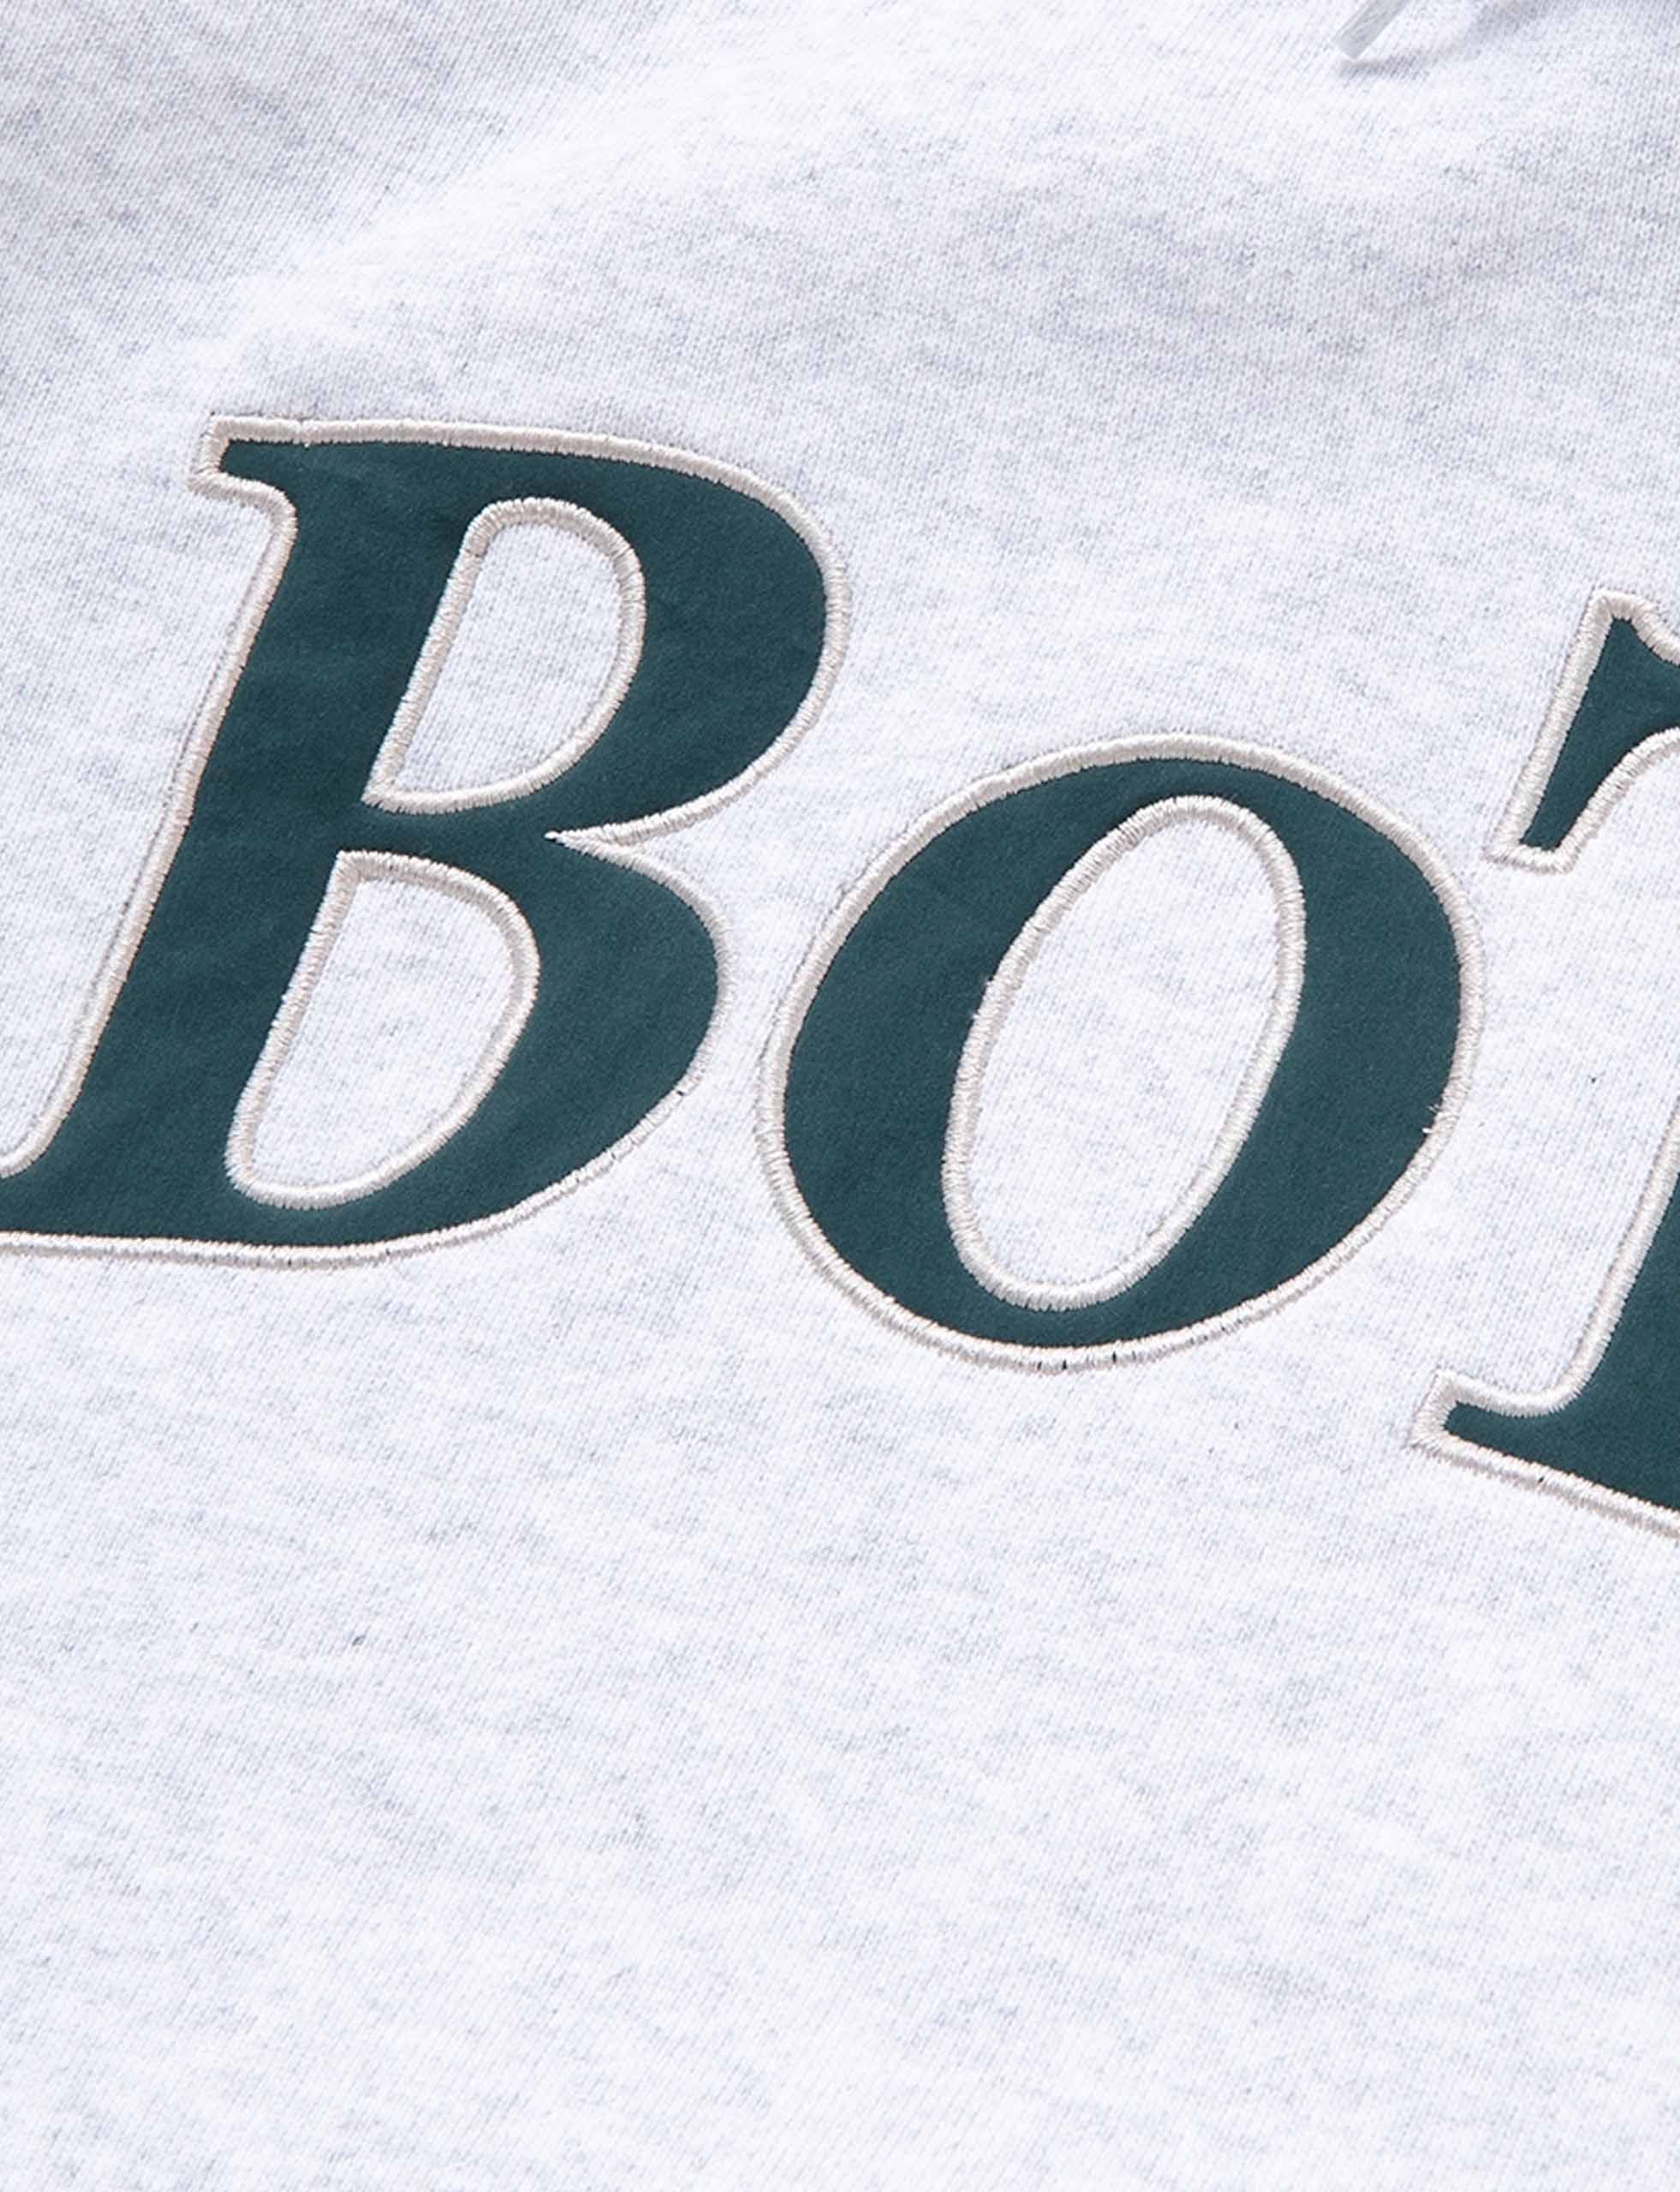 BoTT OG Logo Pullover Hood パーカー ash XLAshサイズ